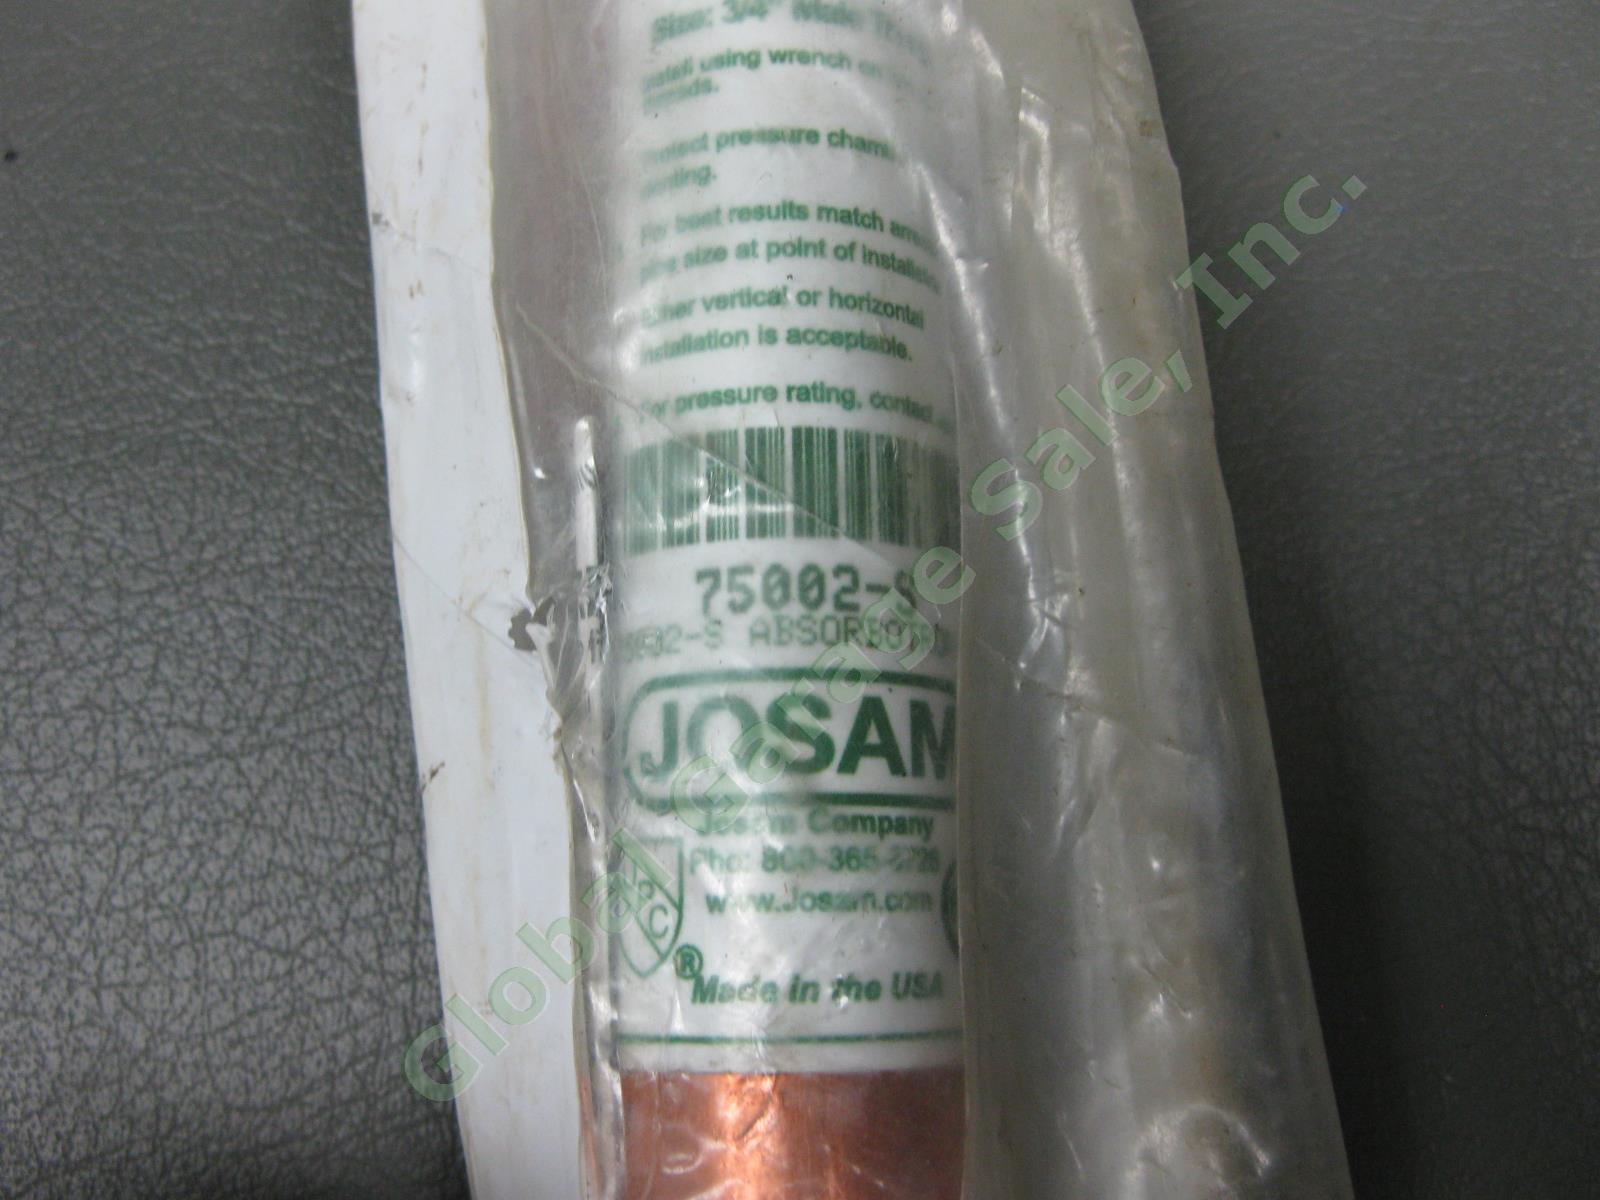 NEW Absorbatron II Type-B 3/4" Male Copper Water Hammer Arrester Josam 75002-S 2